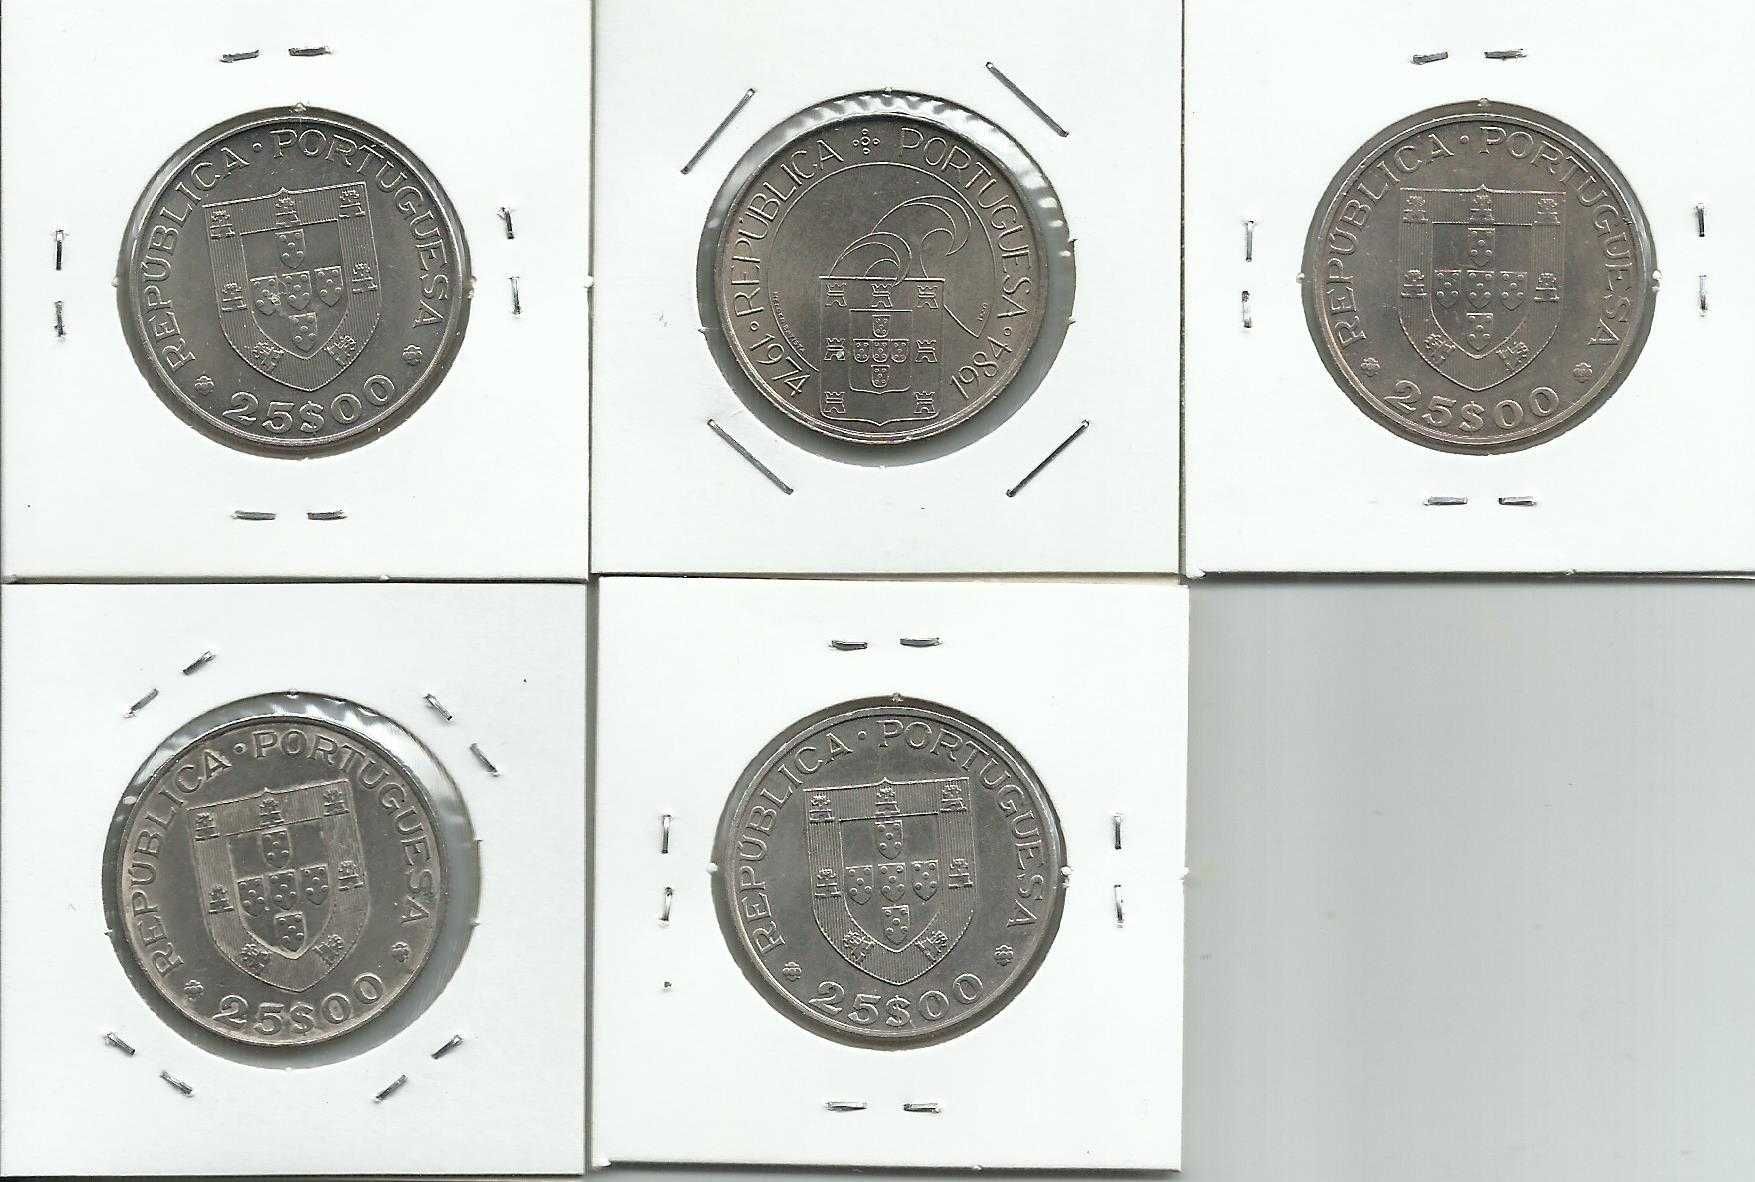 11 moedas portuguesas de 25$00 diferentes – Cupro-Níquel